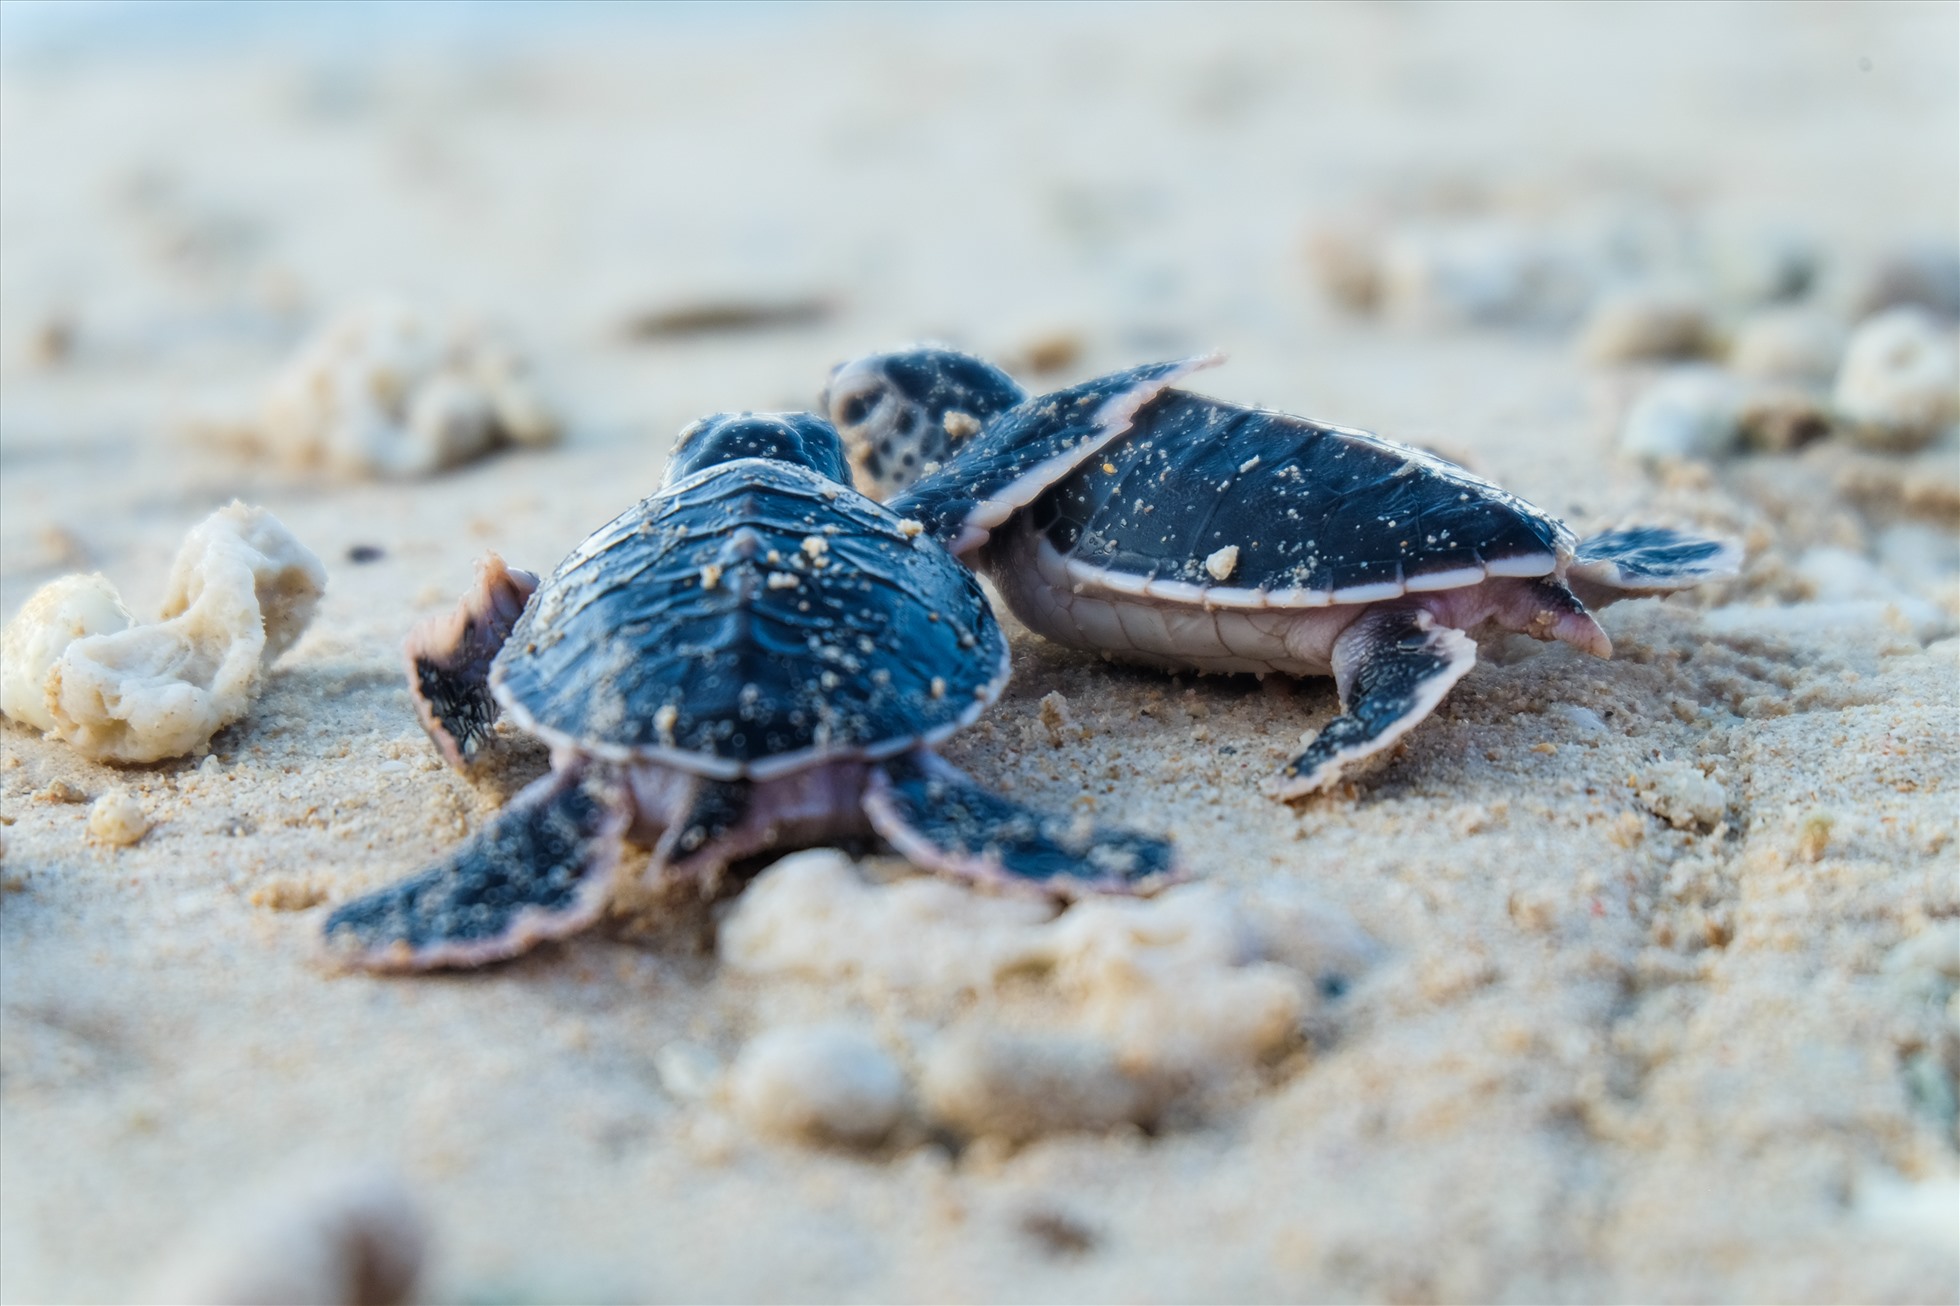 Ban Quản lý Vườn Quốc gia Côn Đảo cũng đã ban hành Quy định Bảo vệ sinh cảnh, bãi đẻ của rùa biển gắn với hoạt động sinh thái Vườn Quốc gia Côn Đảo. Trung bình mỗi tháng, đơn vị phục vụ khoảng 700 lượt khách đến tham quan, trải nghiệm xem rùa đẻ trứng.